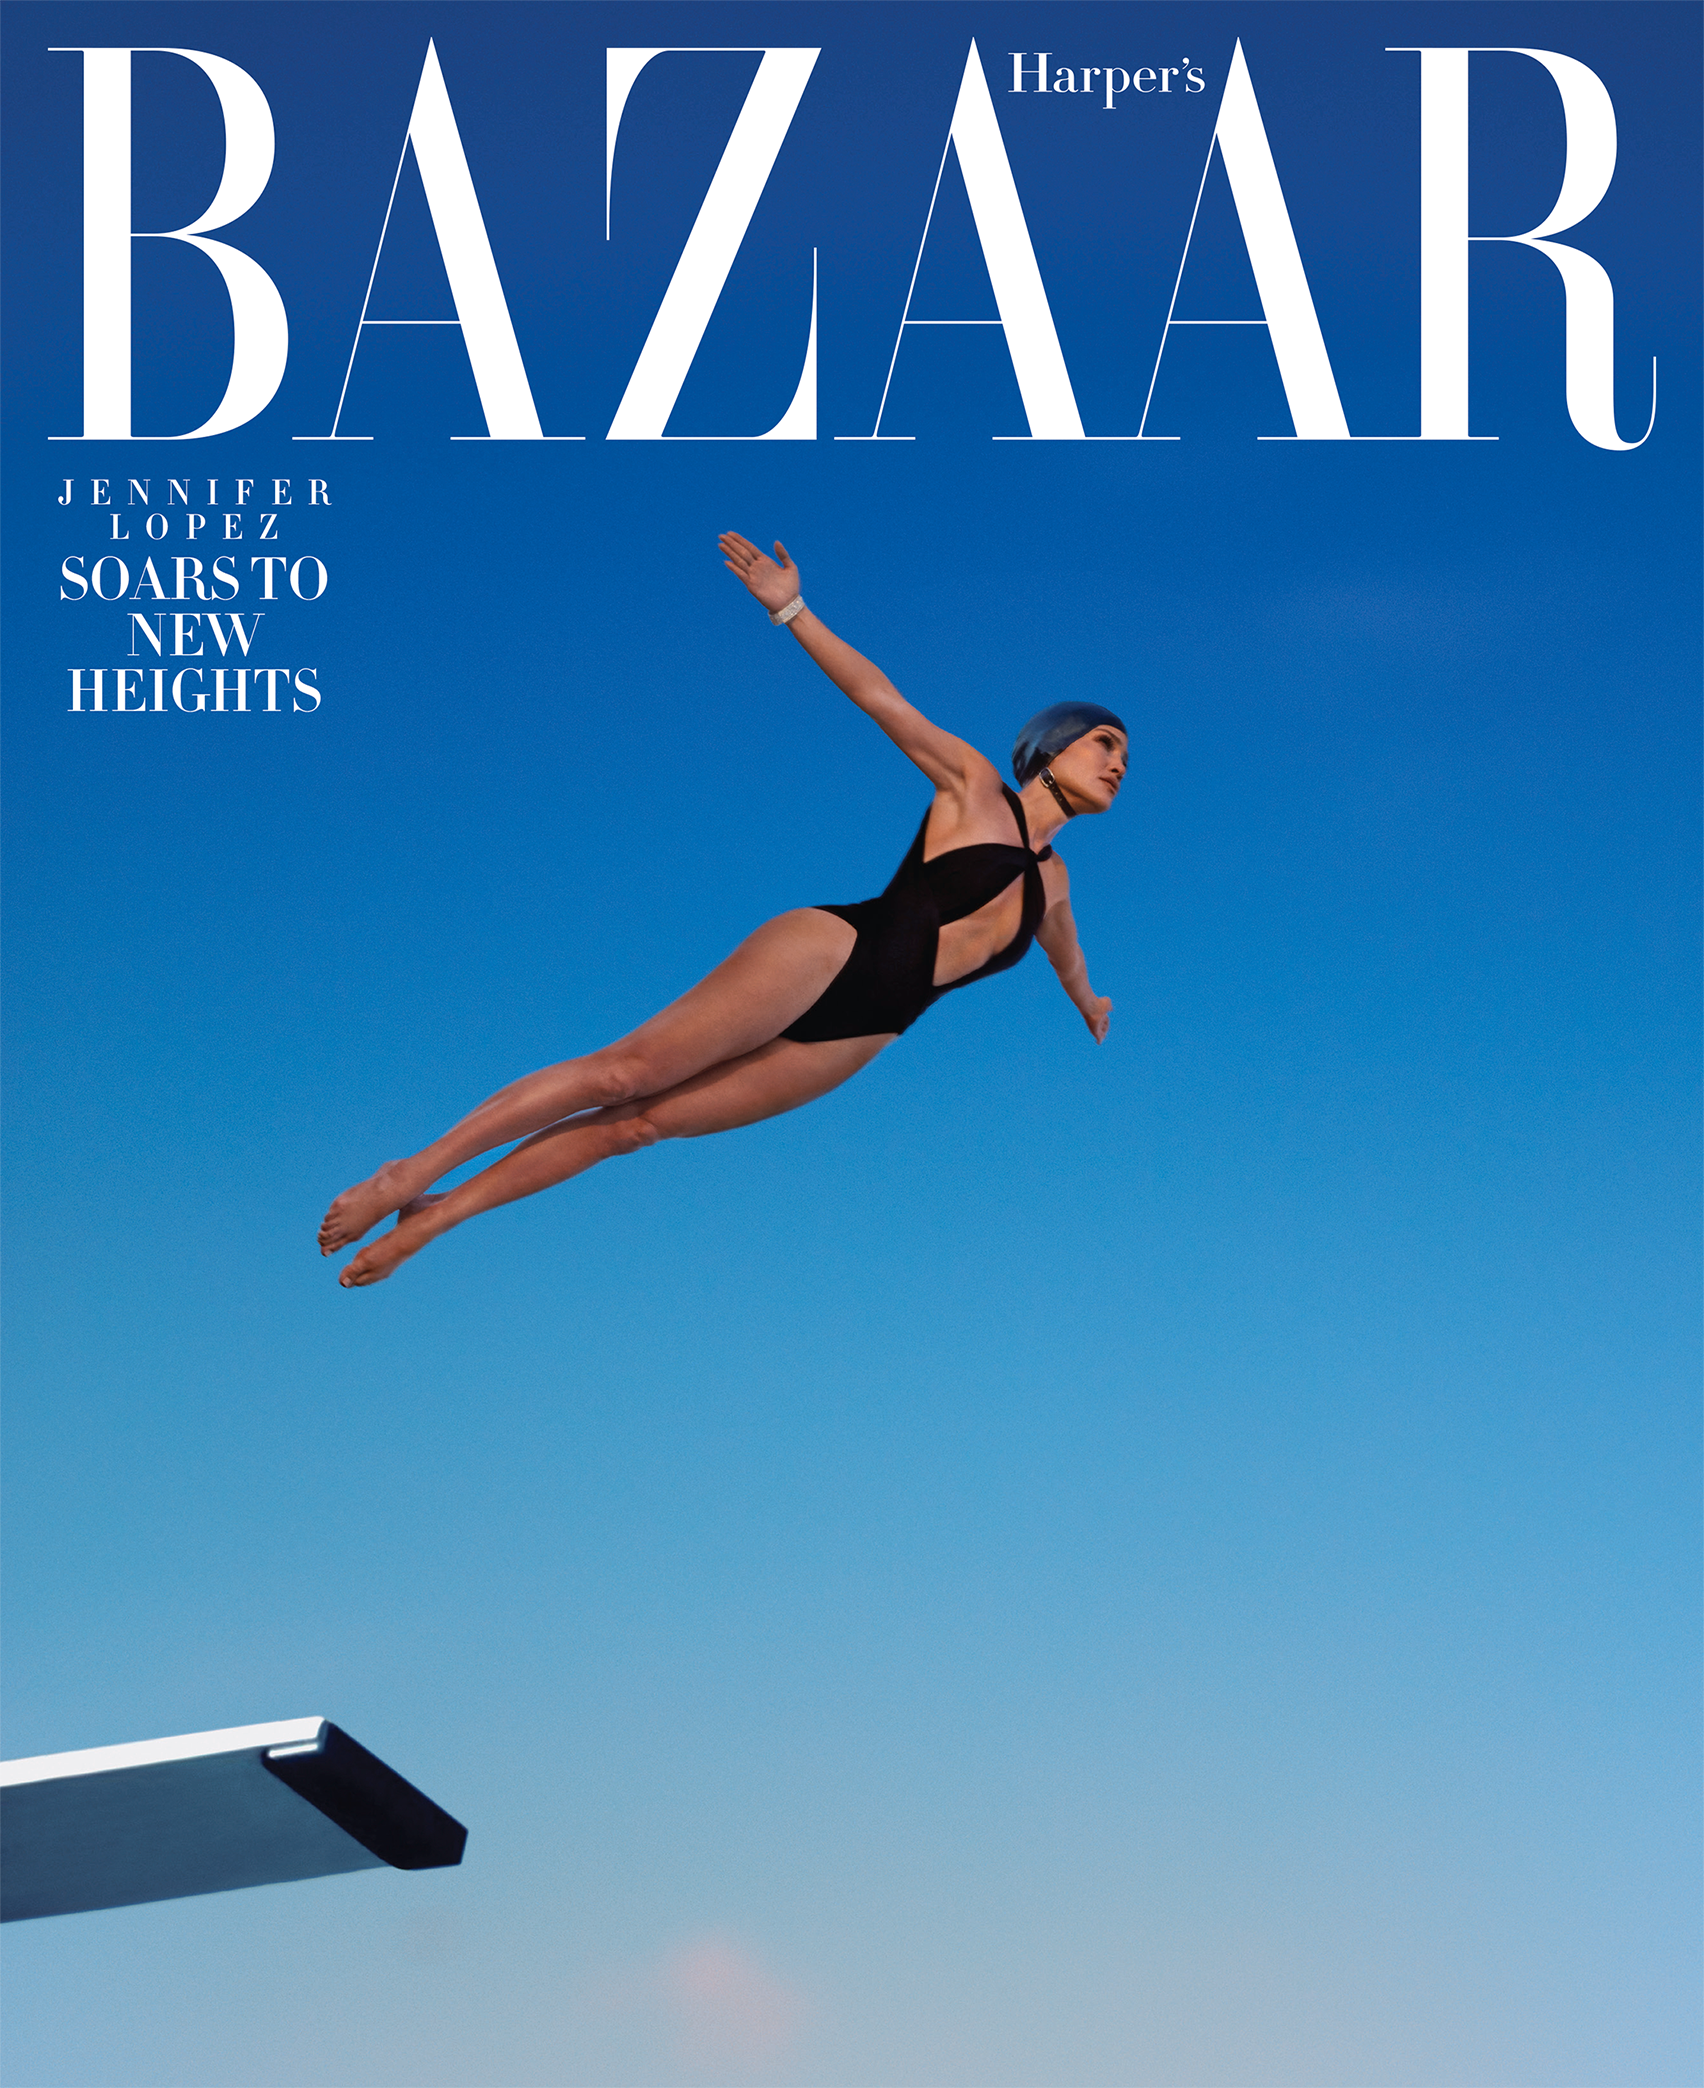          Harper's Bazaar